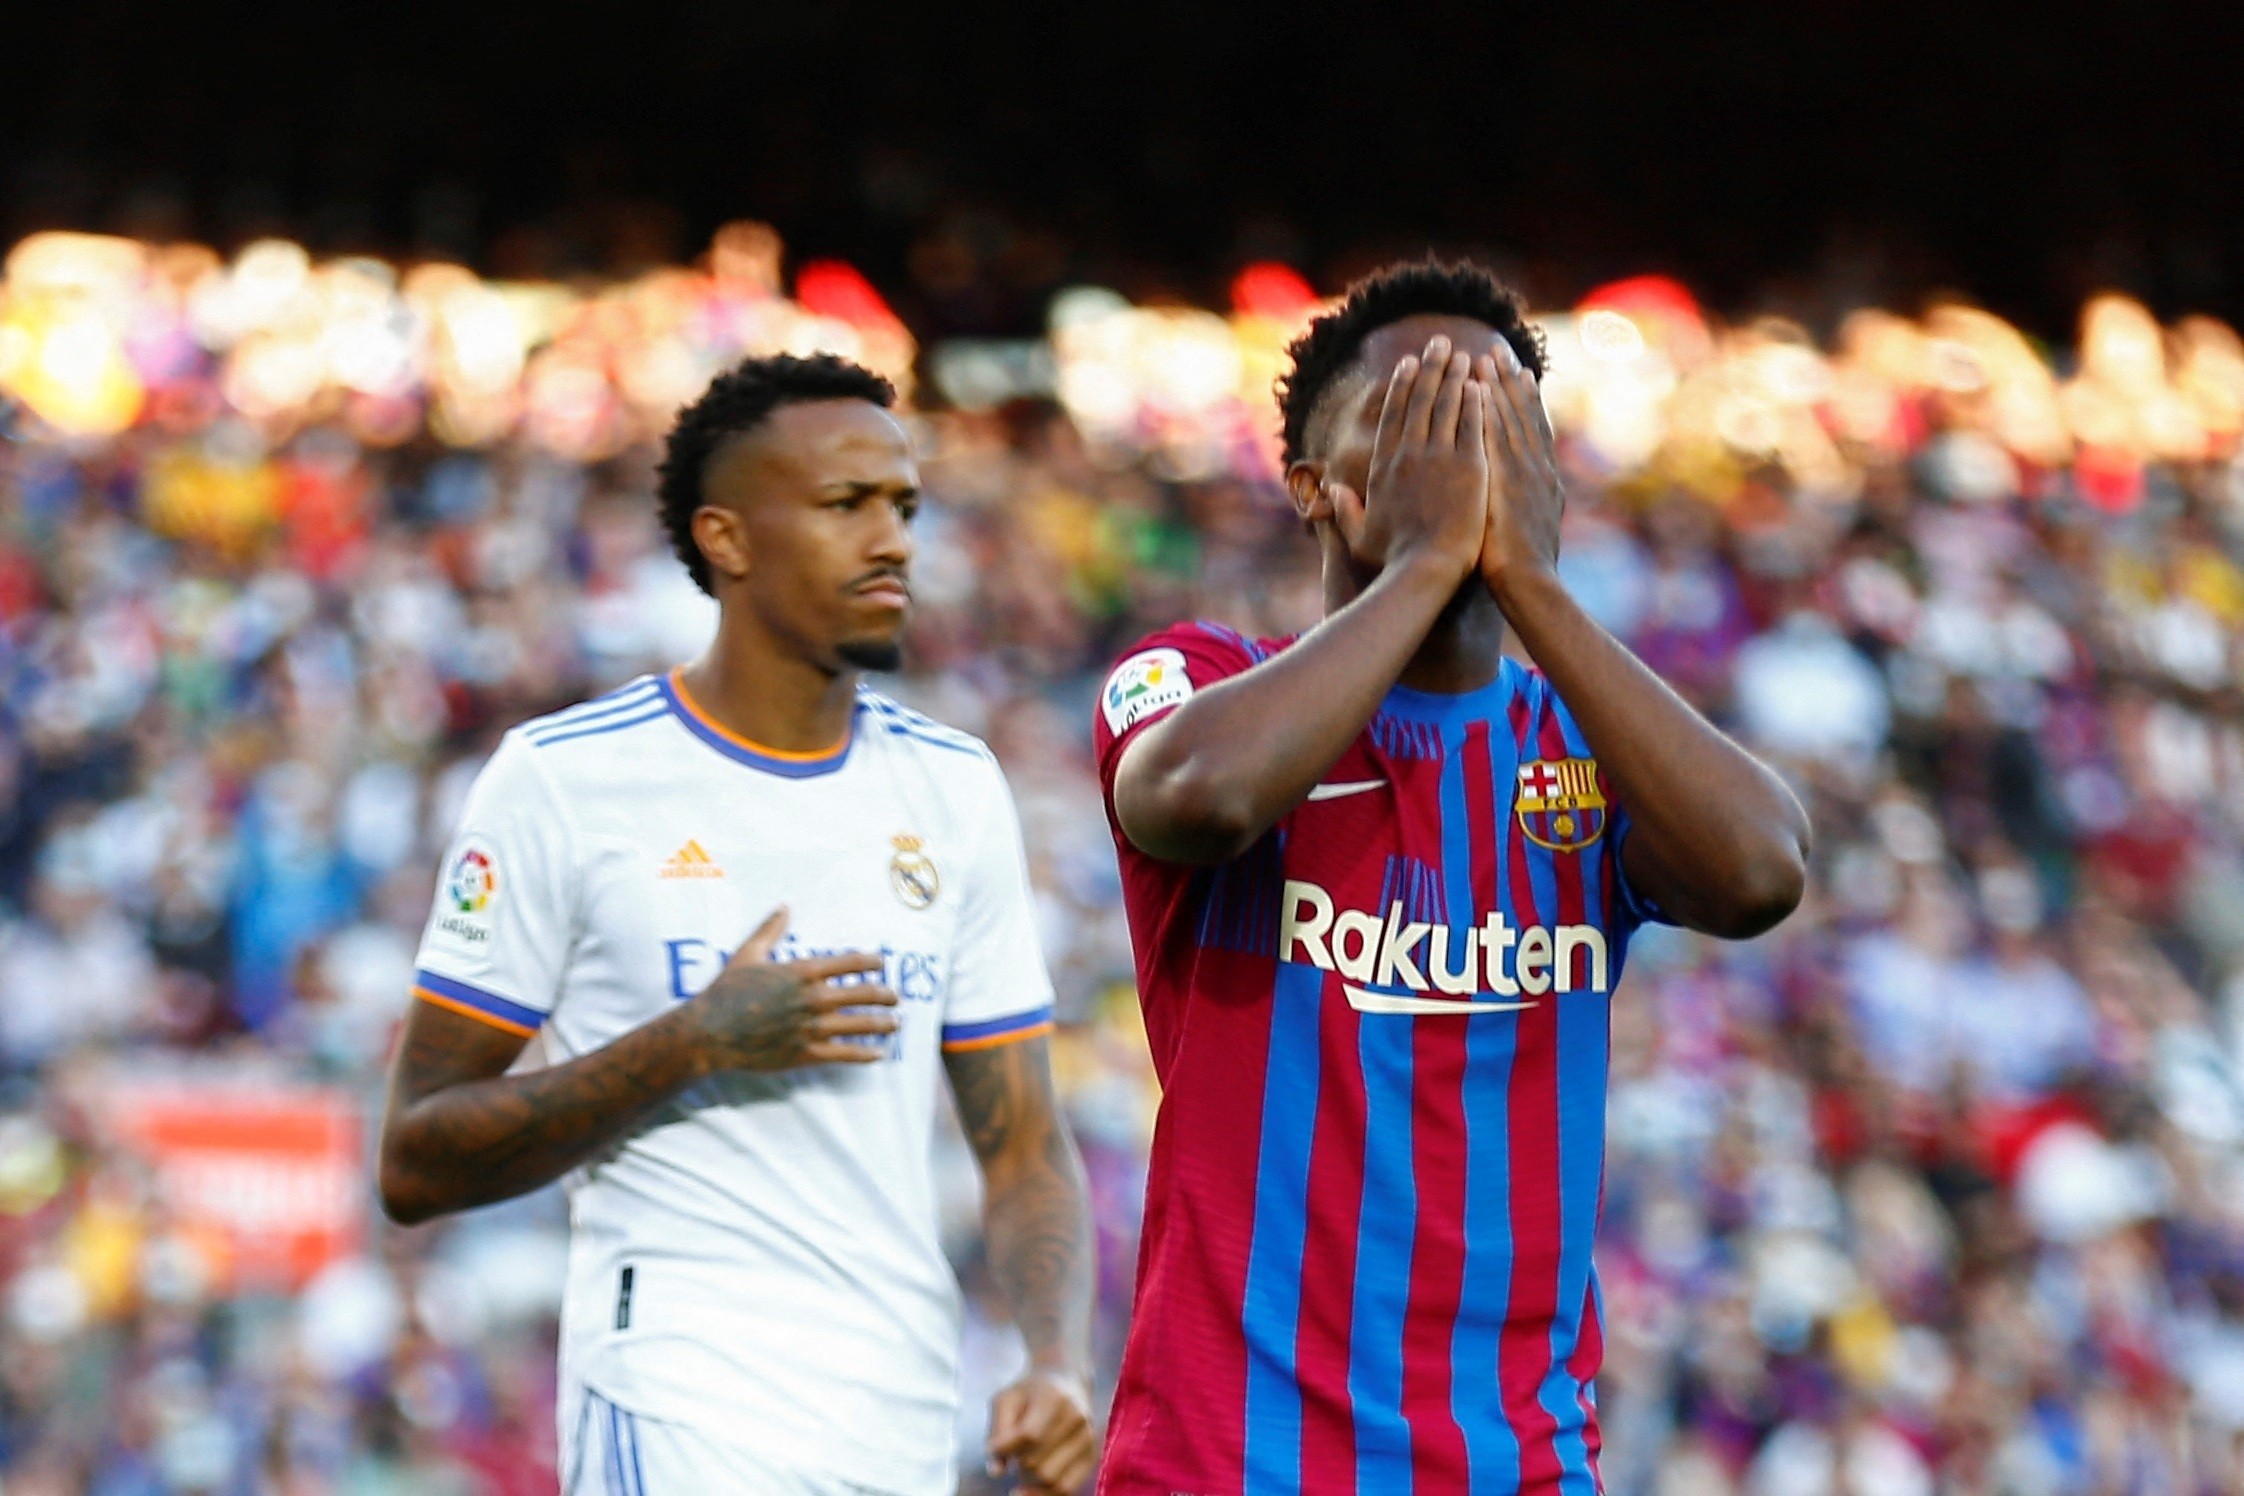 Ça s’empire pour le Barça, 4 cadres inquiètent après la défaite face au Real